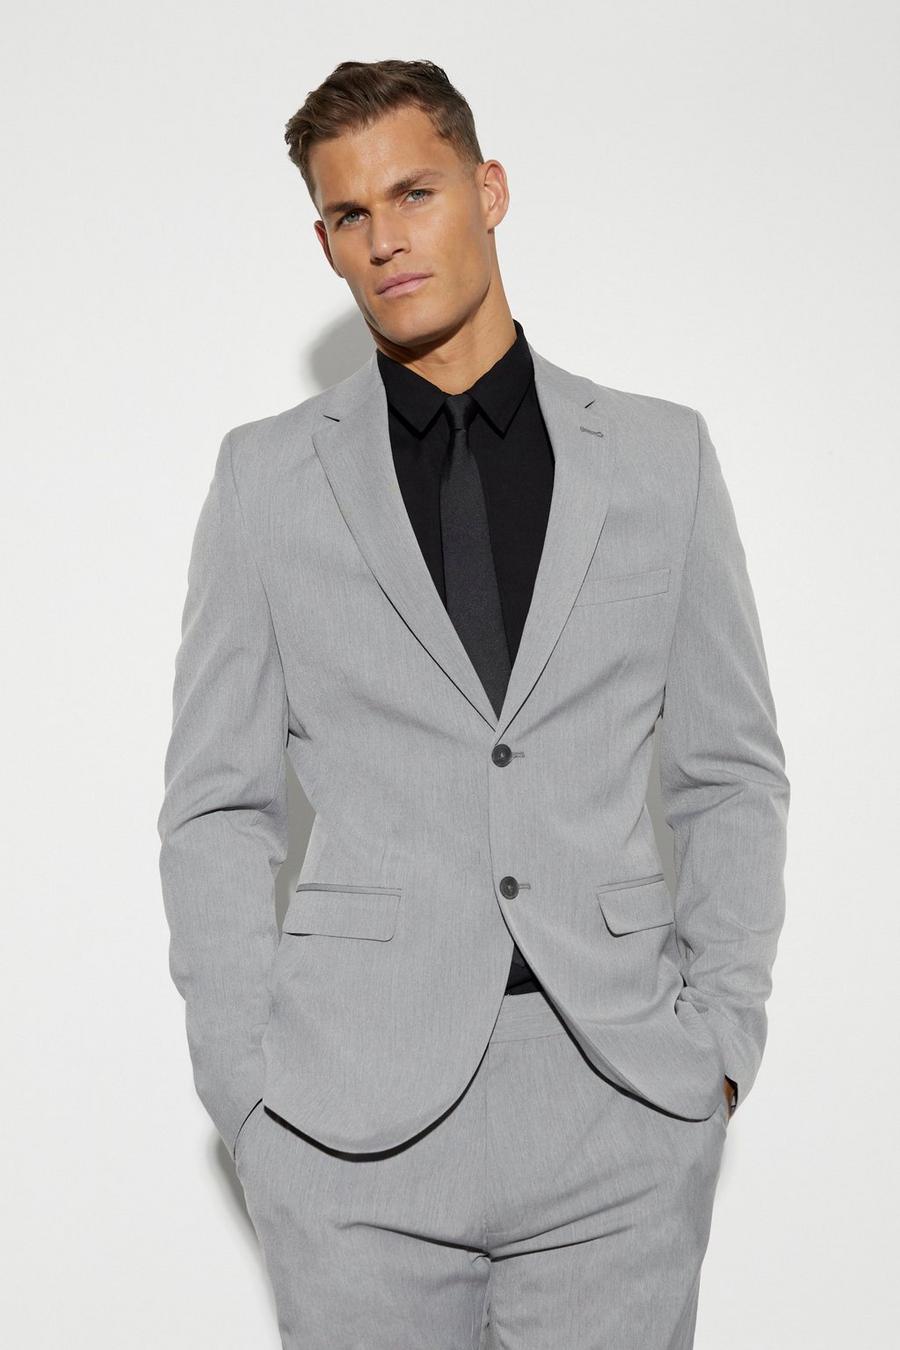 אפור ז'קט חליפה סקיני עם רכיסה אחת לגברים גבוהים